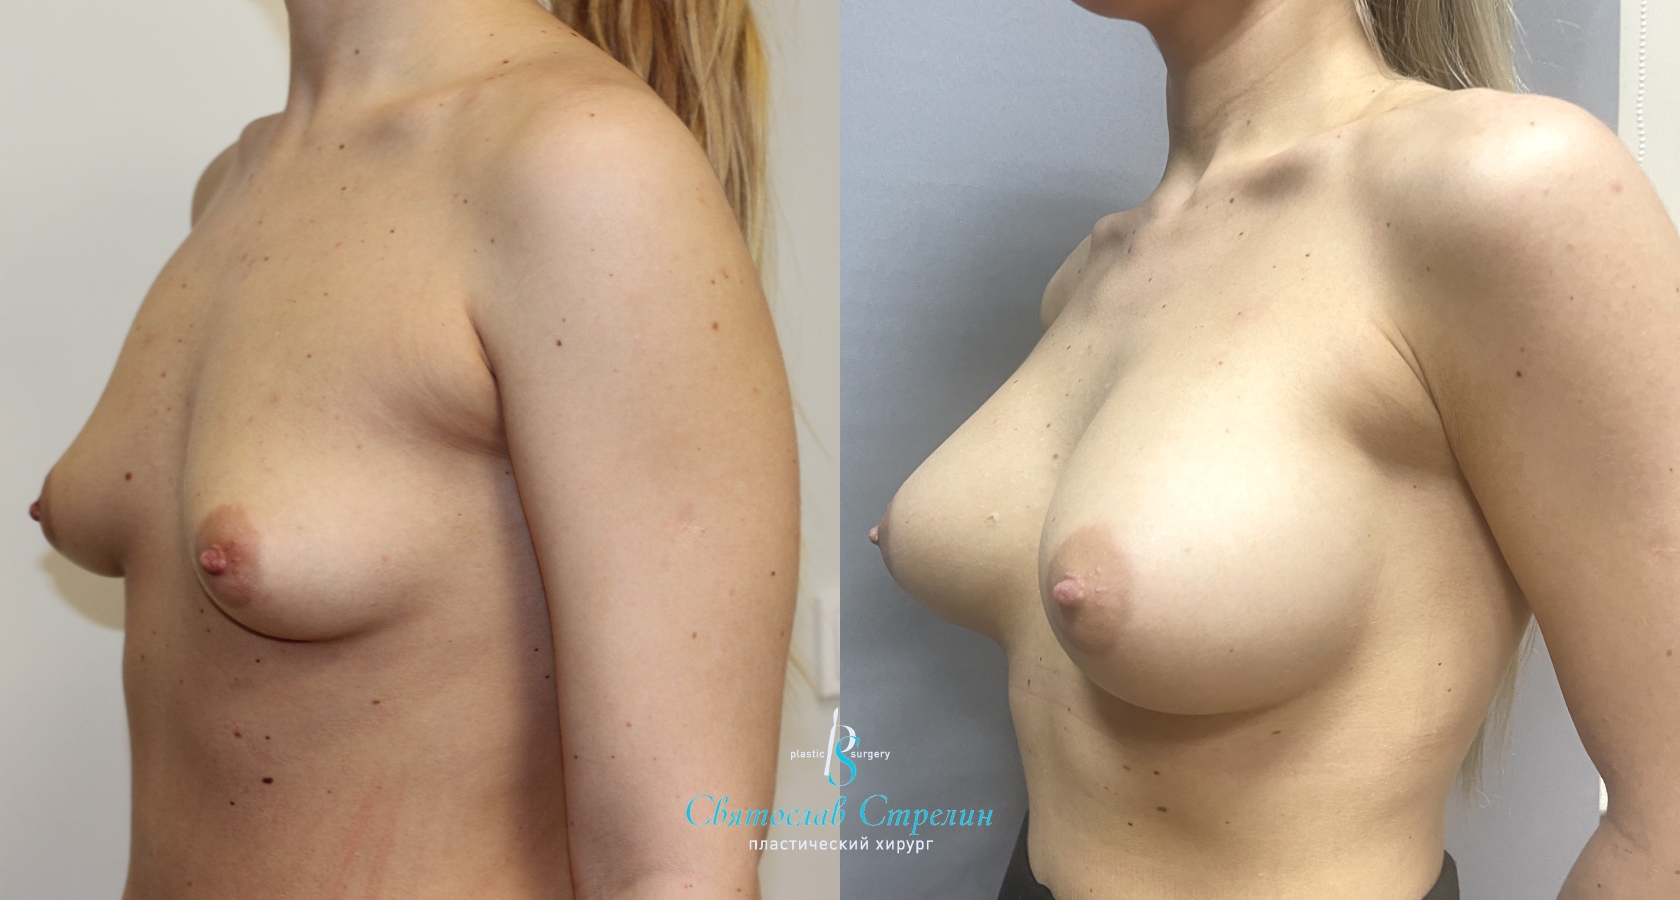 Увеличение груди, 1,5 года после операции, импланты Себбин 380 и 425 мл, анатомические, большая высота, высокая проекция, доступ подмышечный